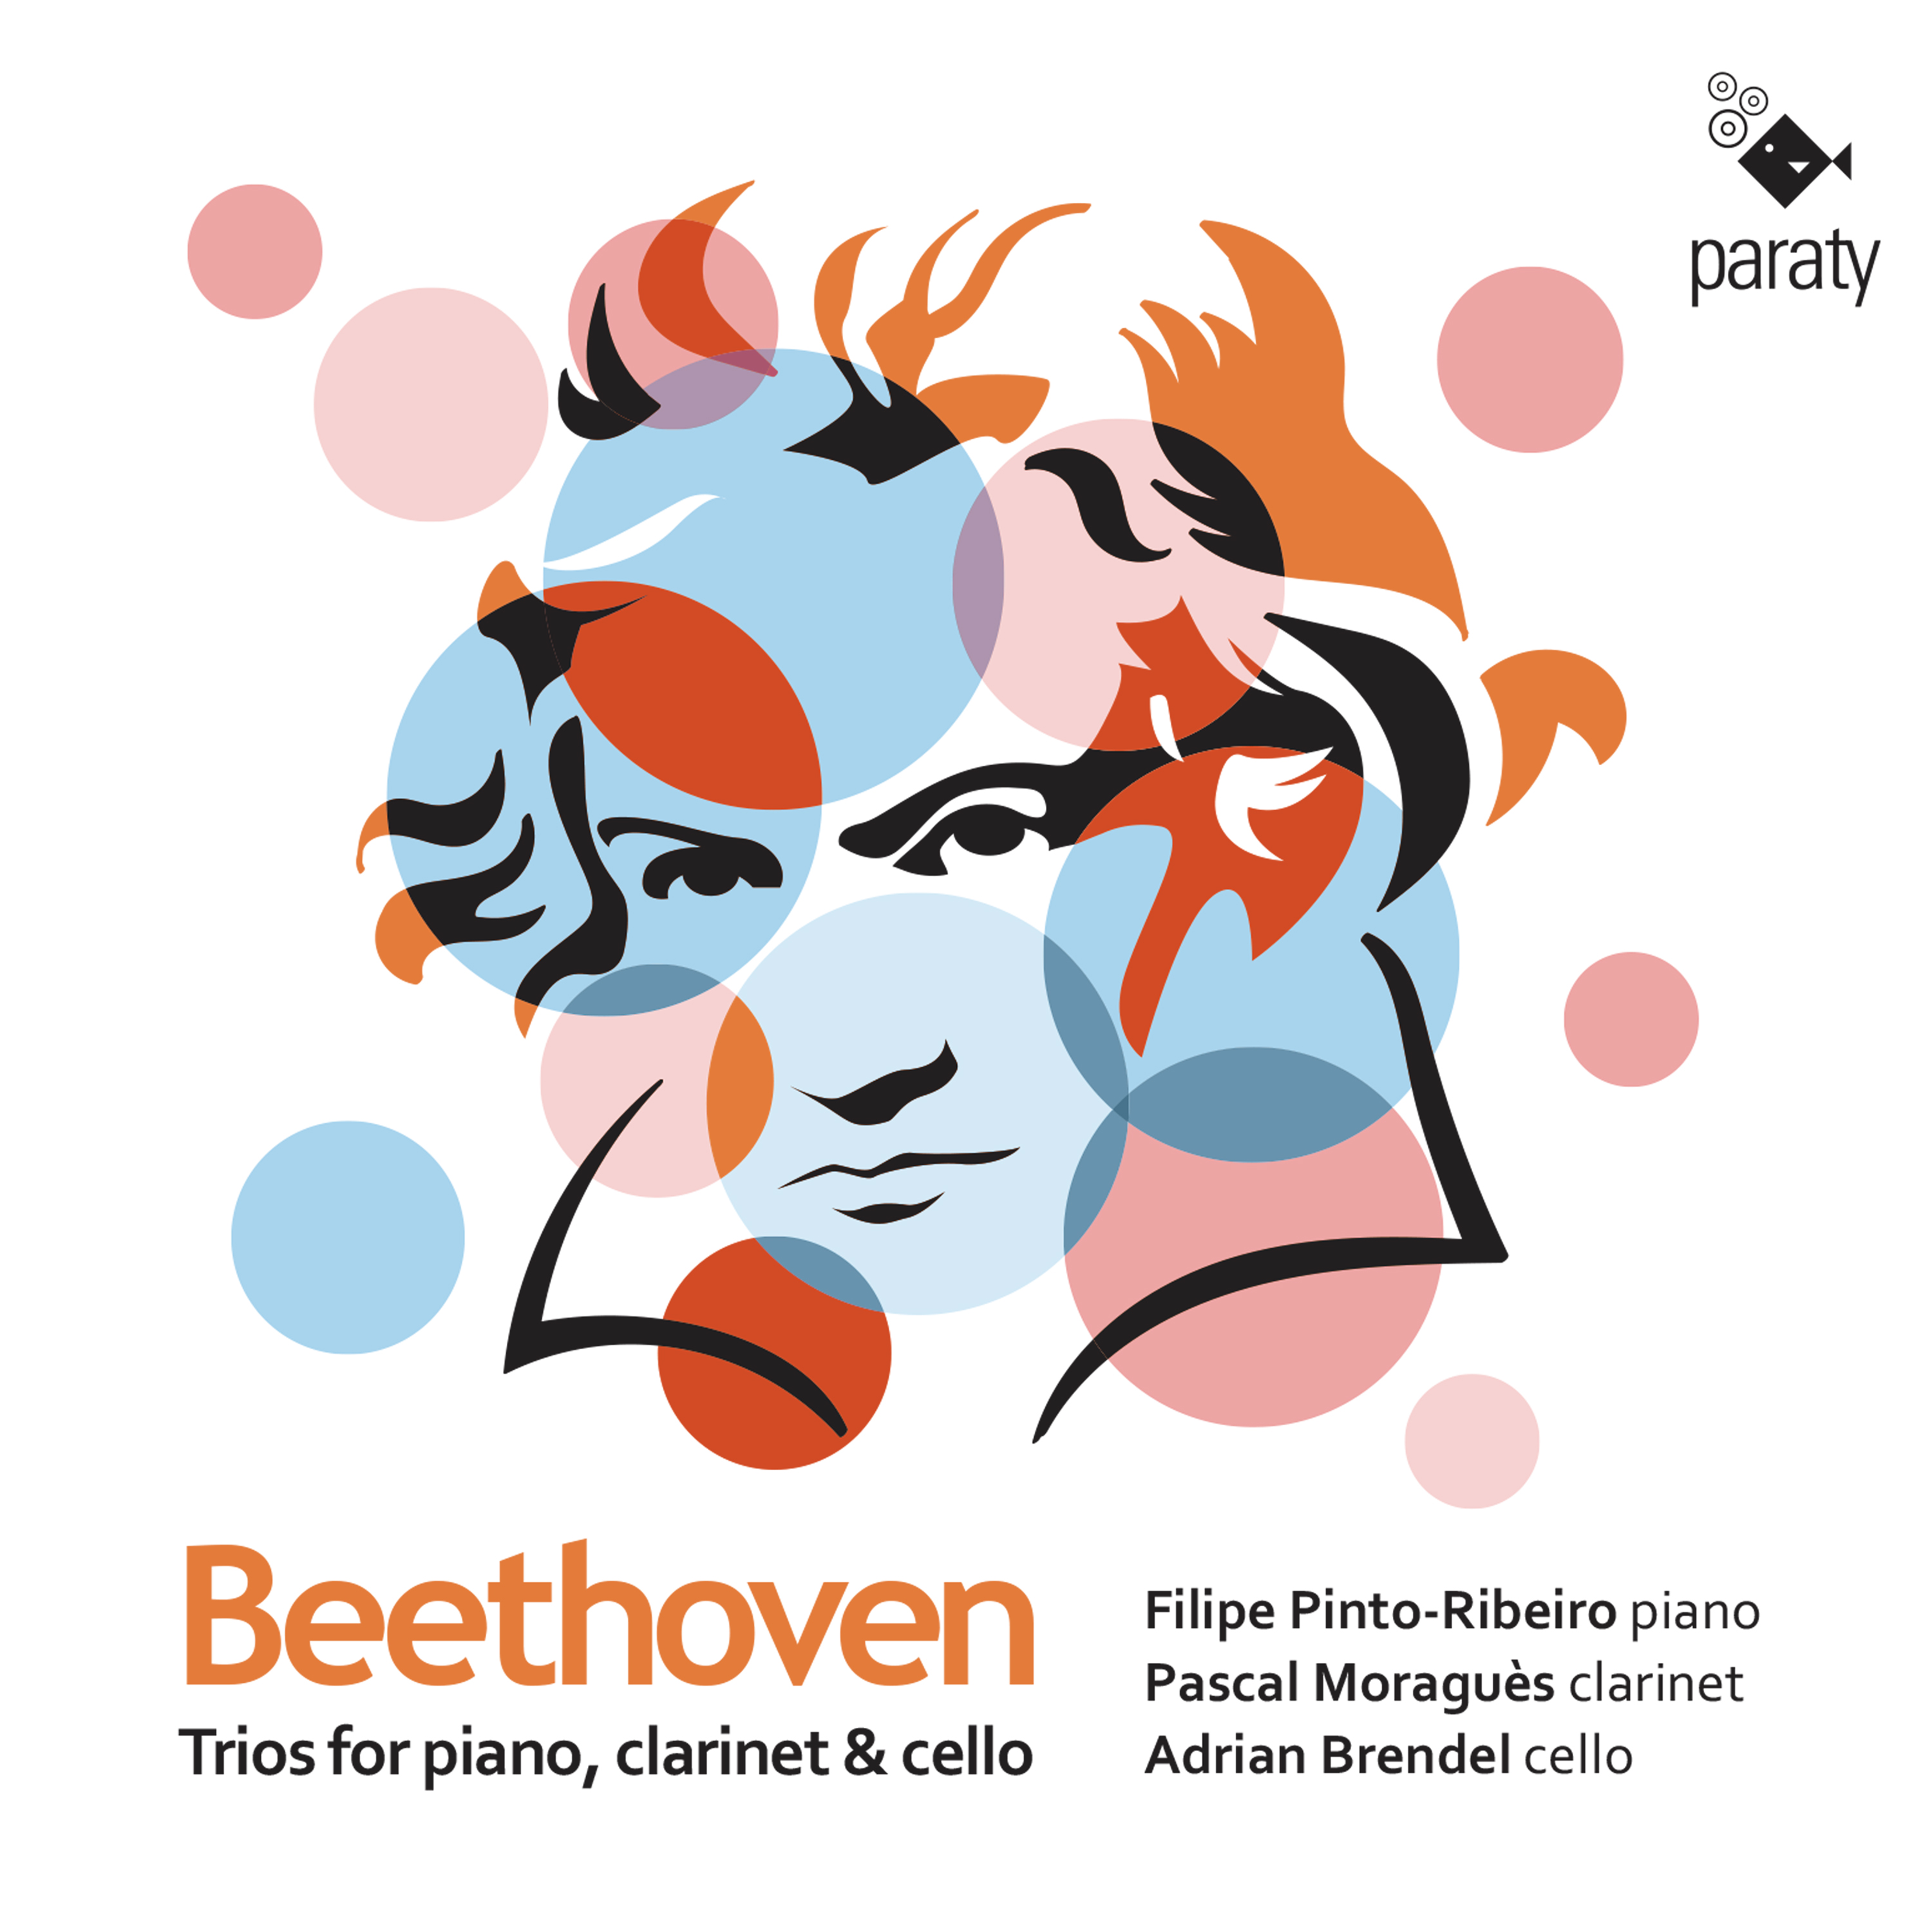 Beethoven Trio for Piano, Clarinet & Cello